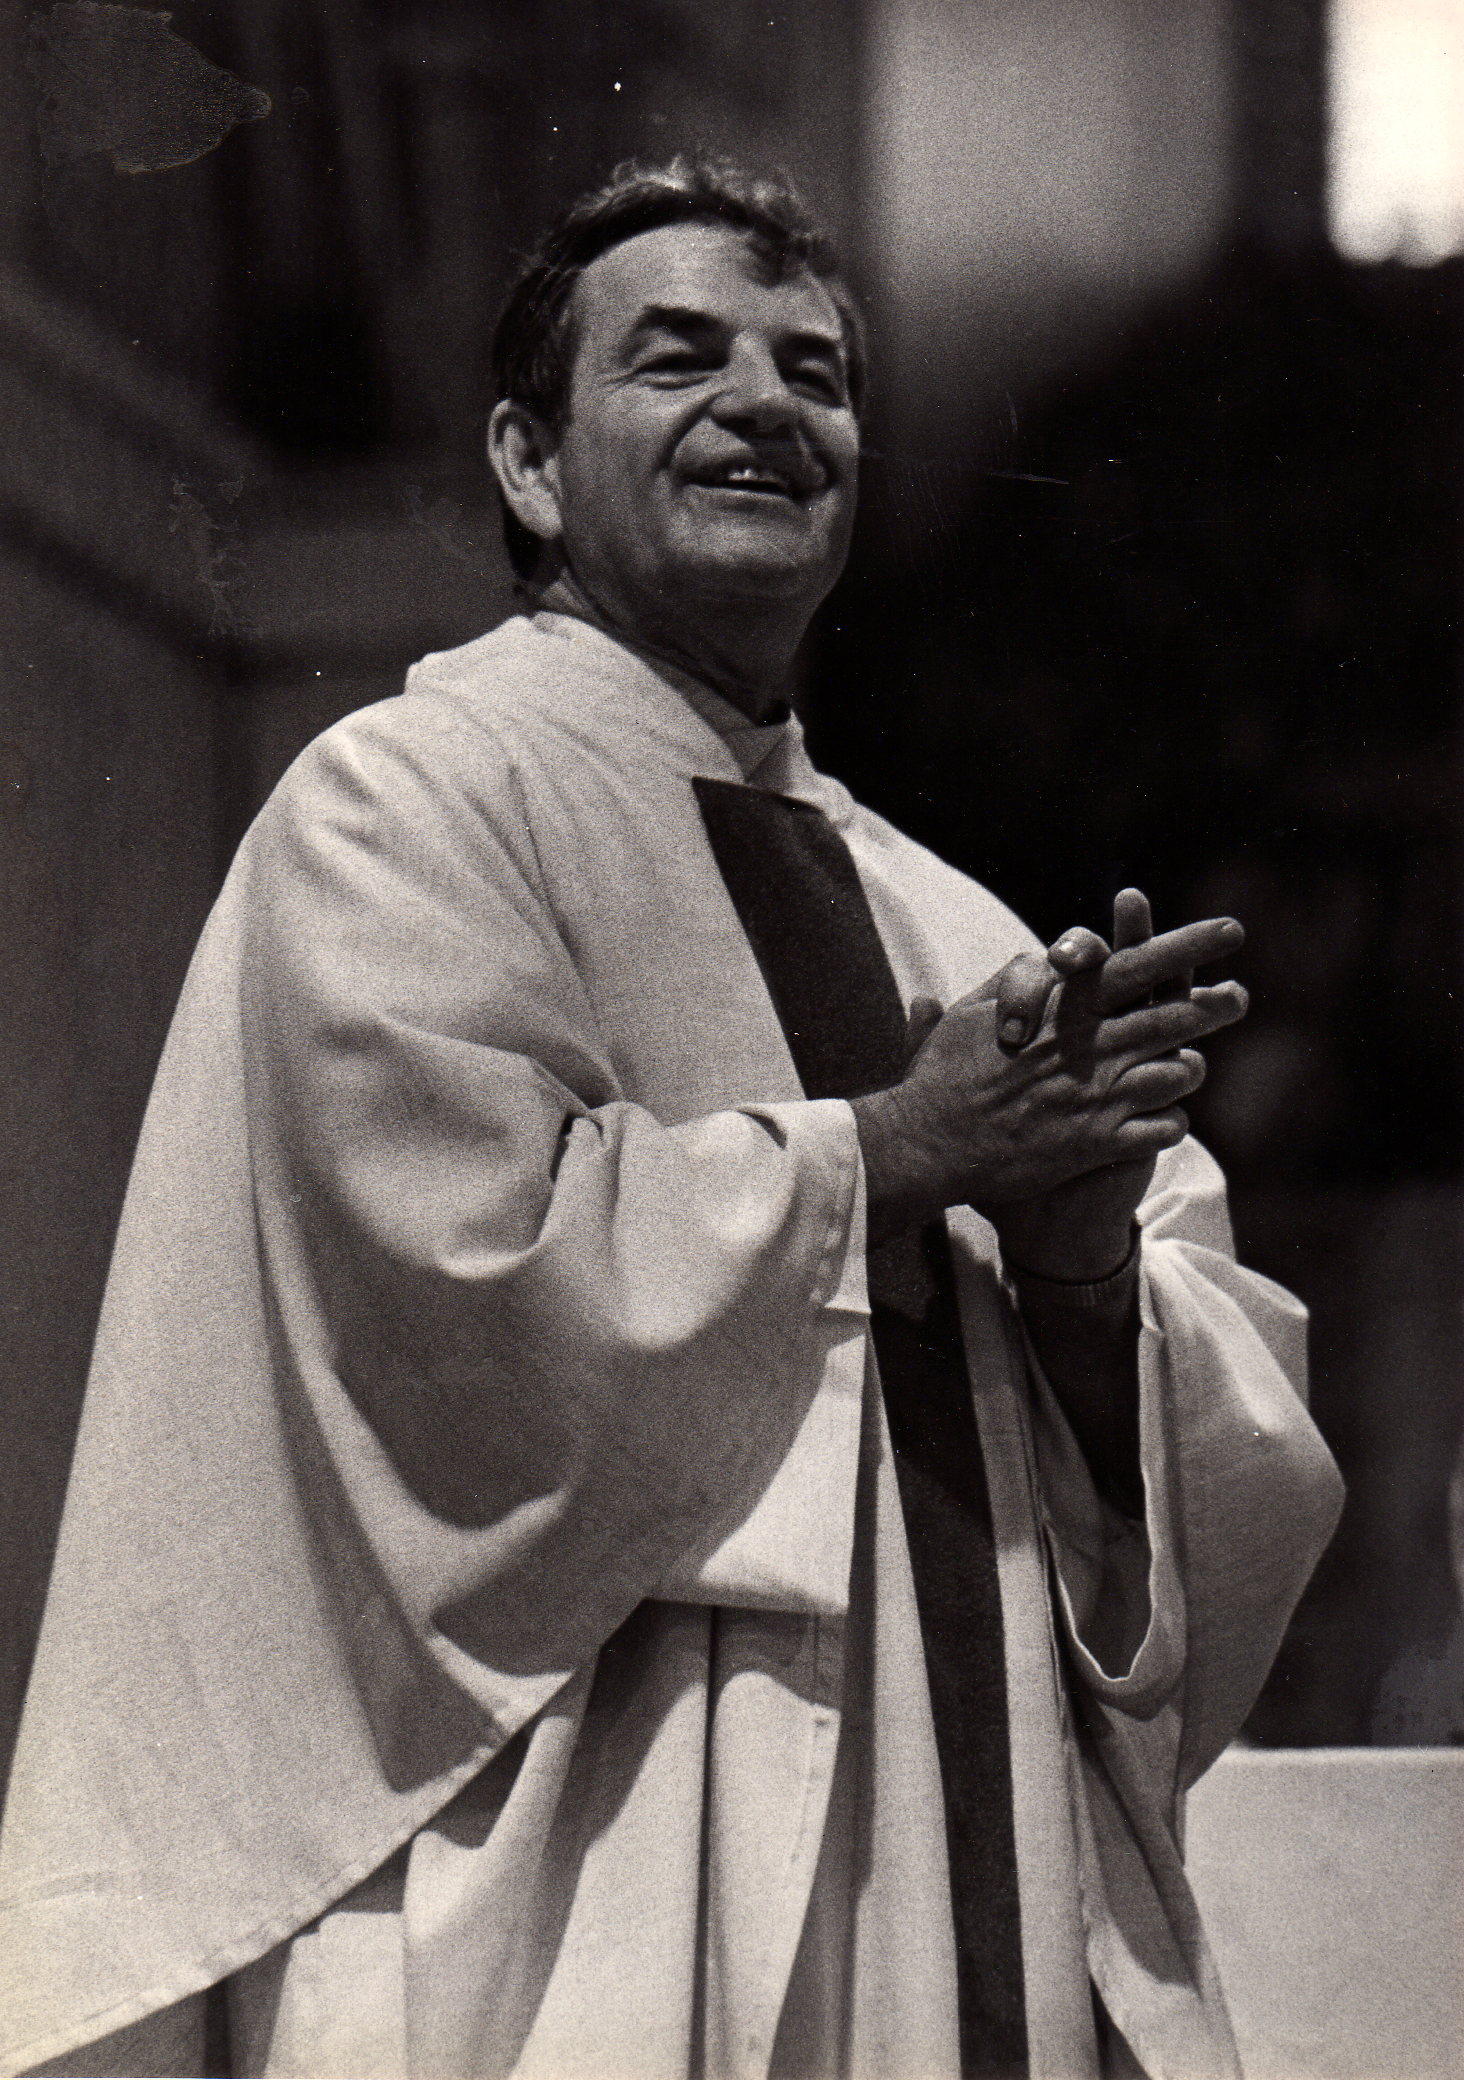 Fr. Chuck Gallagher, SJ